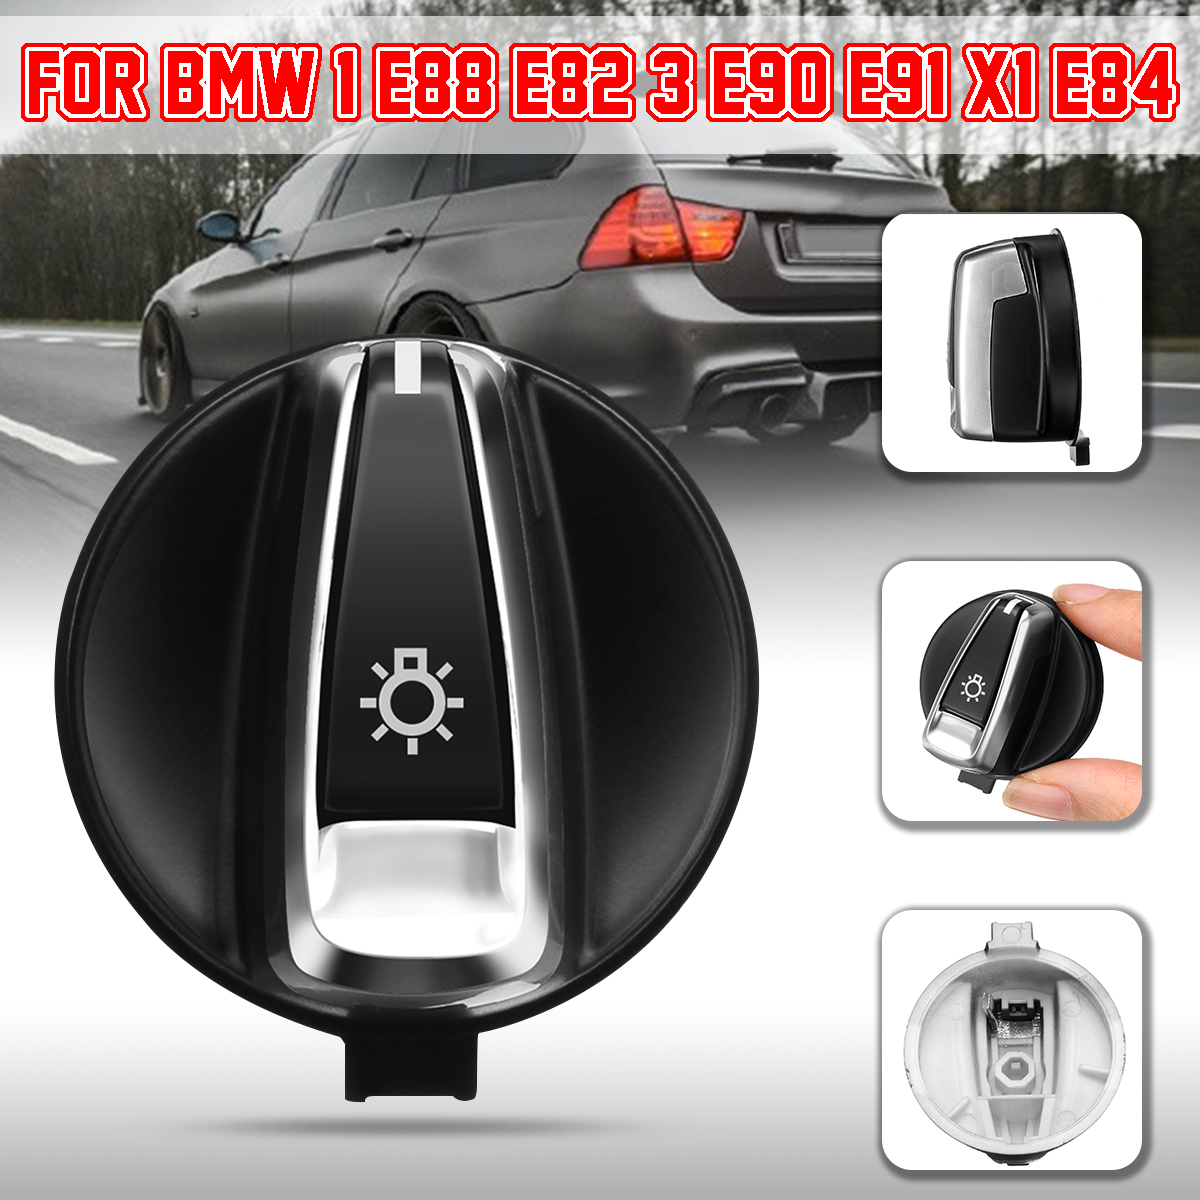 JIEIIFAFH Car Chrome Head Light Switch Knob Button for BMW 1 E88 E82 3 E90 E91 X1 E84 